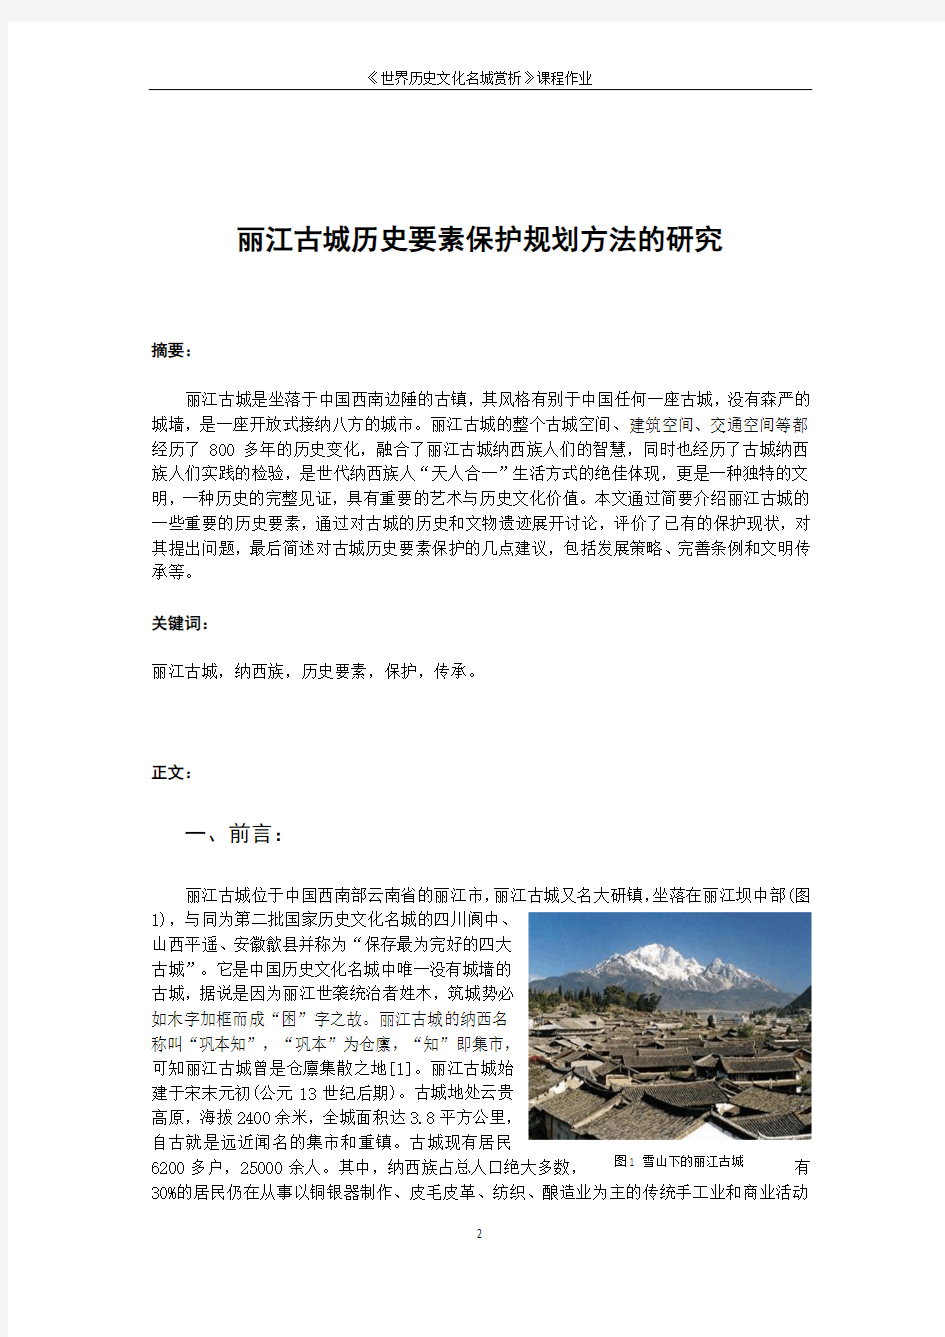 世界历史文化名城赏析-丽江古城历史要素保护规划方法的研究